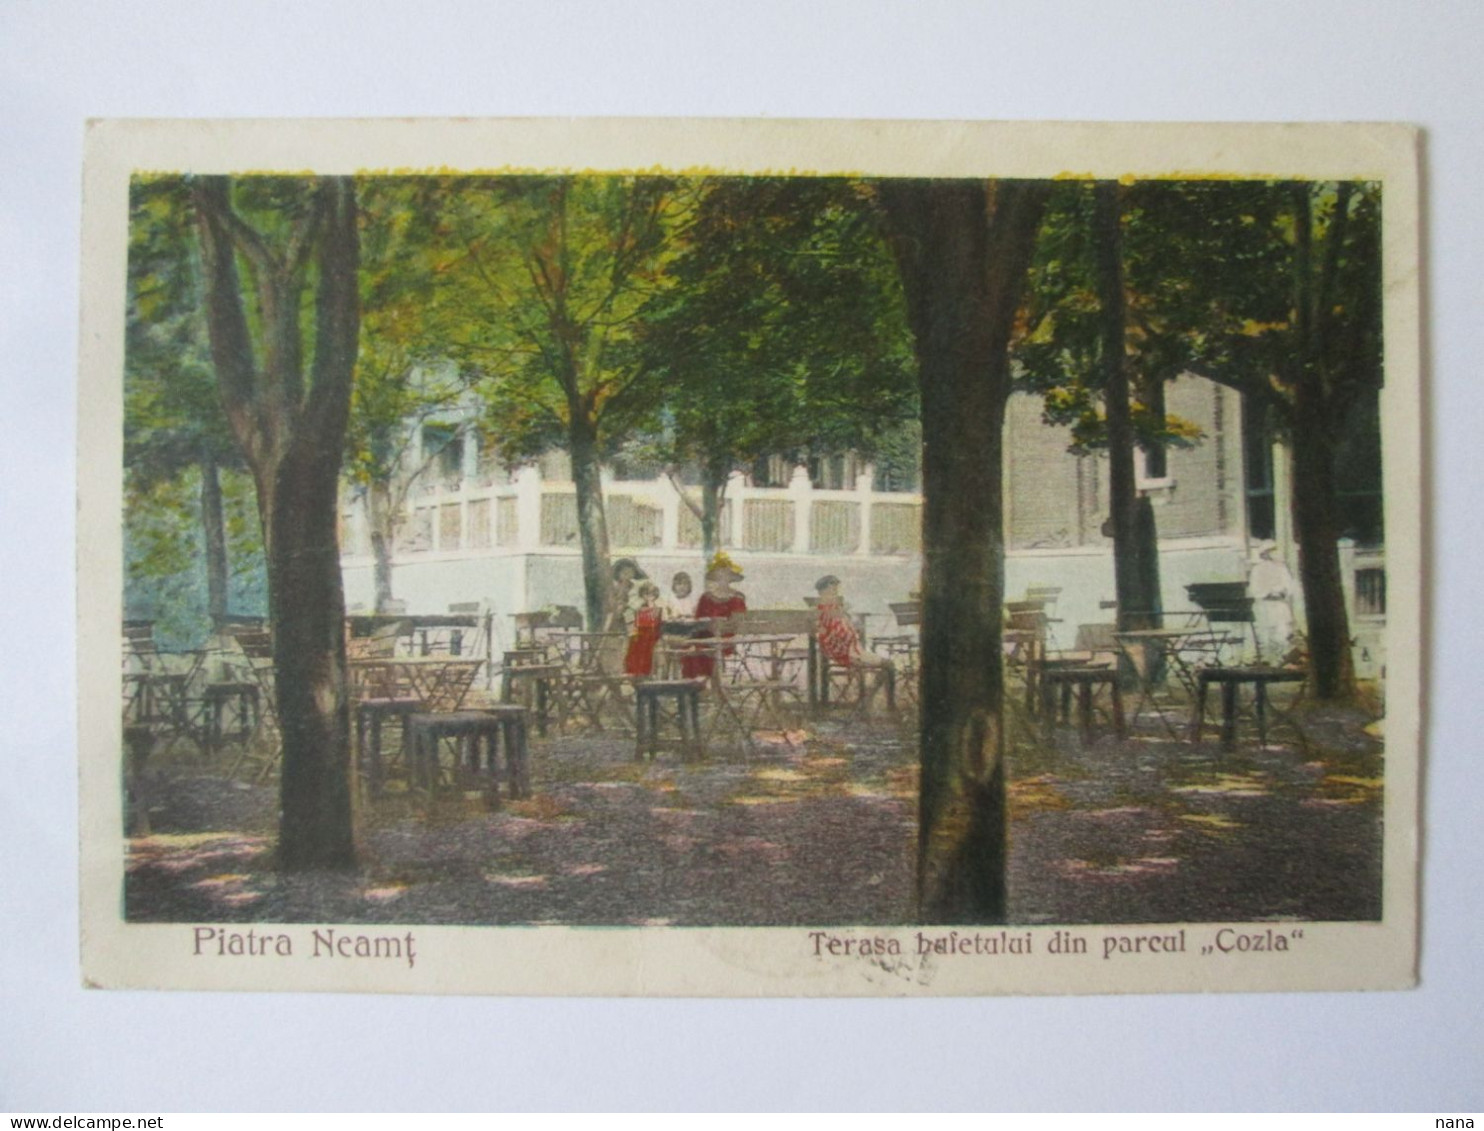 Romania-Piatra Neamț:Buffet Terrasse Cozla,carte Postale Voyage 1925/Cozla Sideboard Terrace 1925 Mailed Postcard - Rumänien